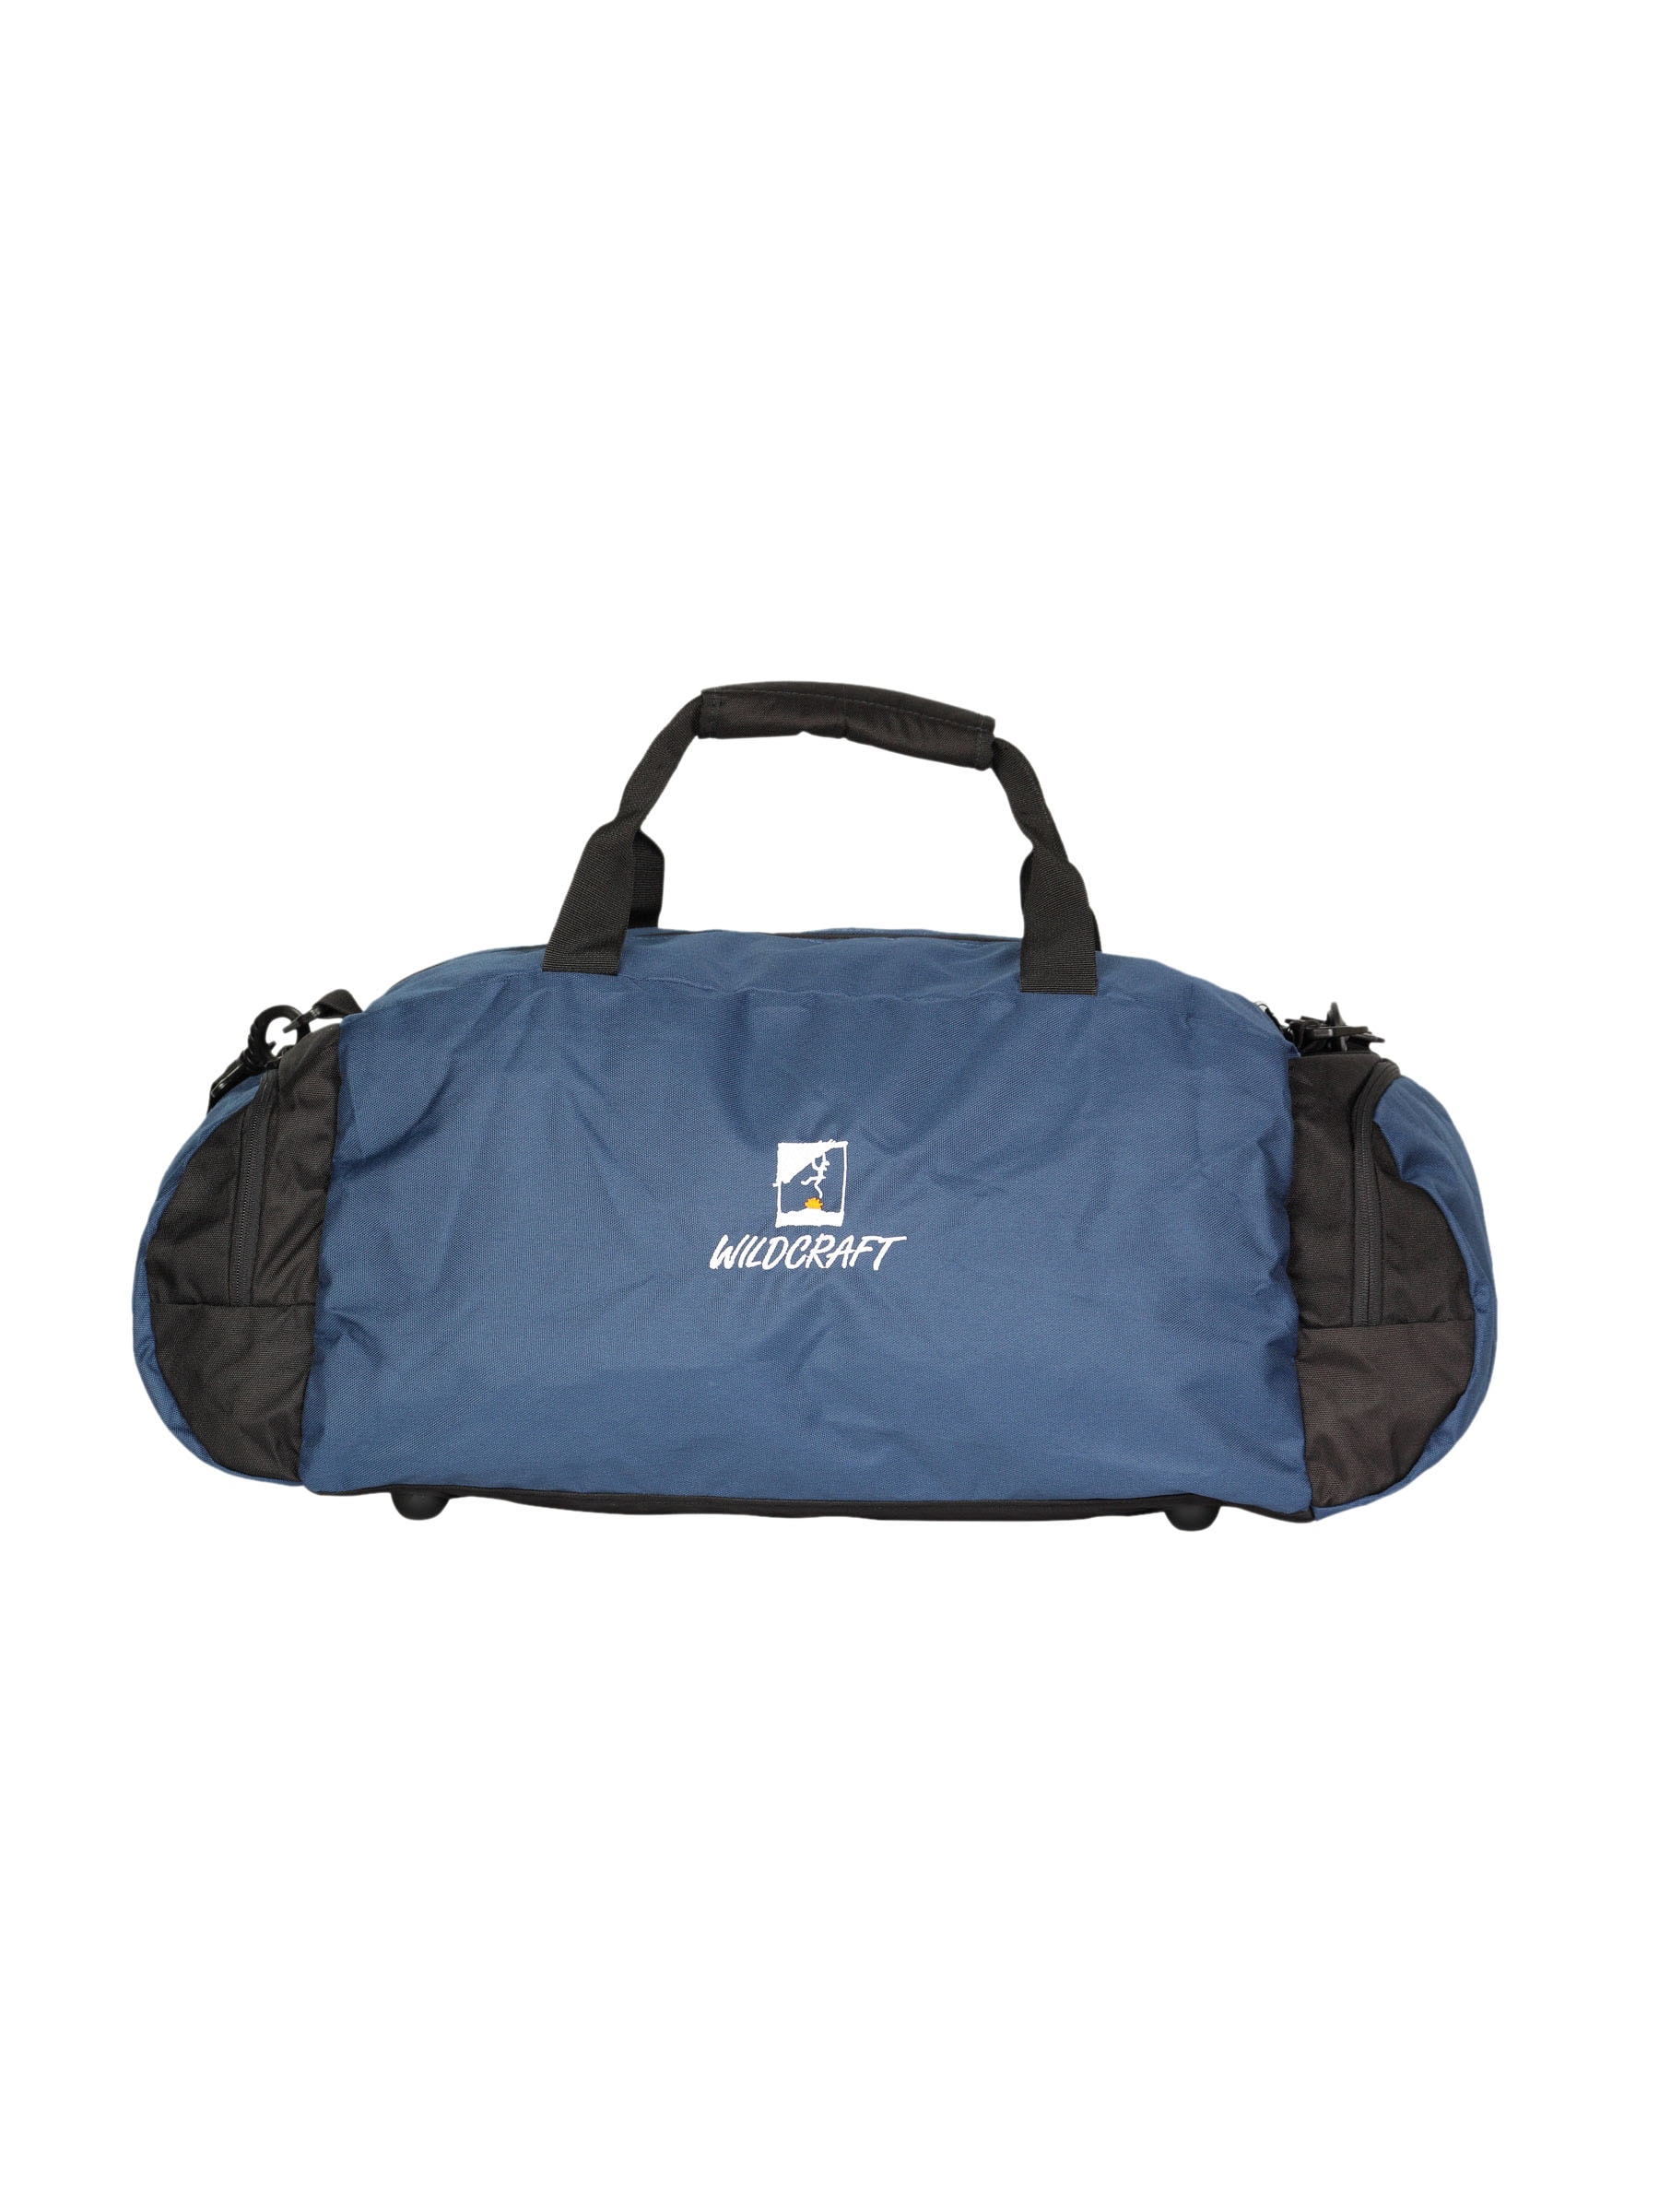 Wildcraft Unisex Blue Duffel Bag